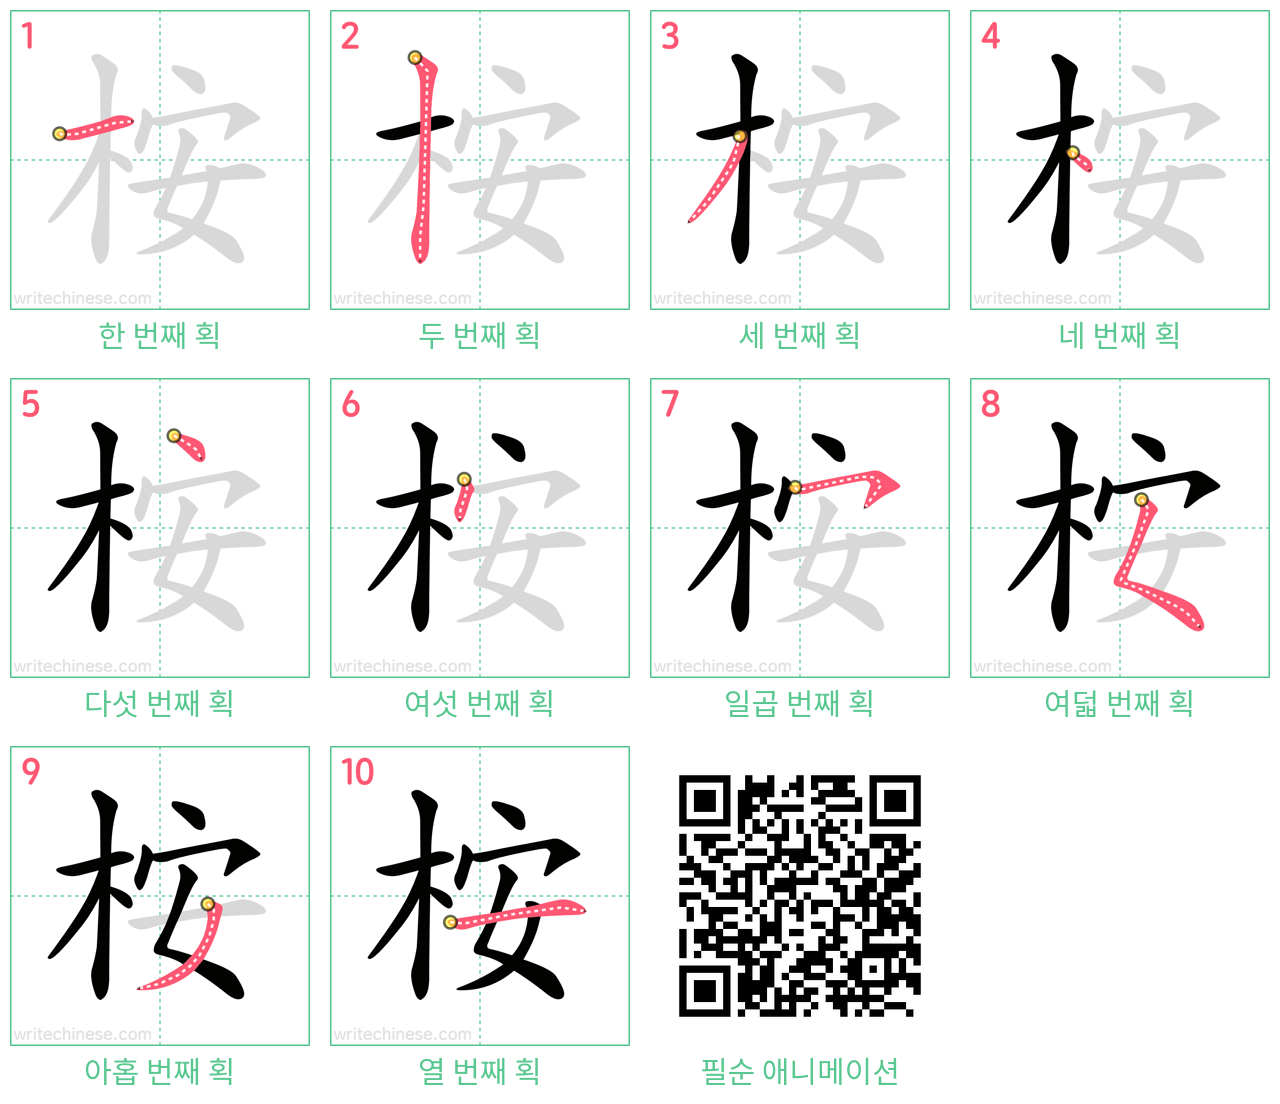 桉 step-by-step stroke order diagrams